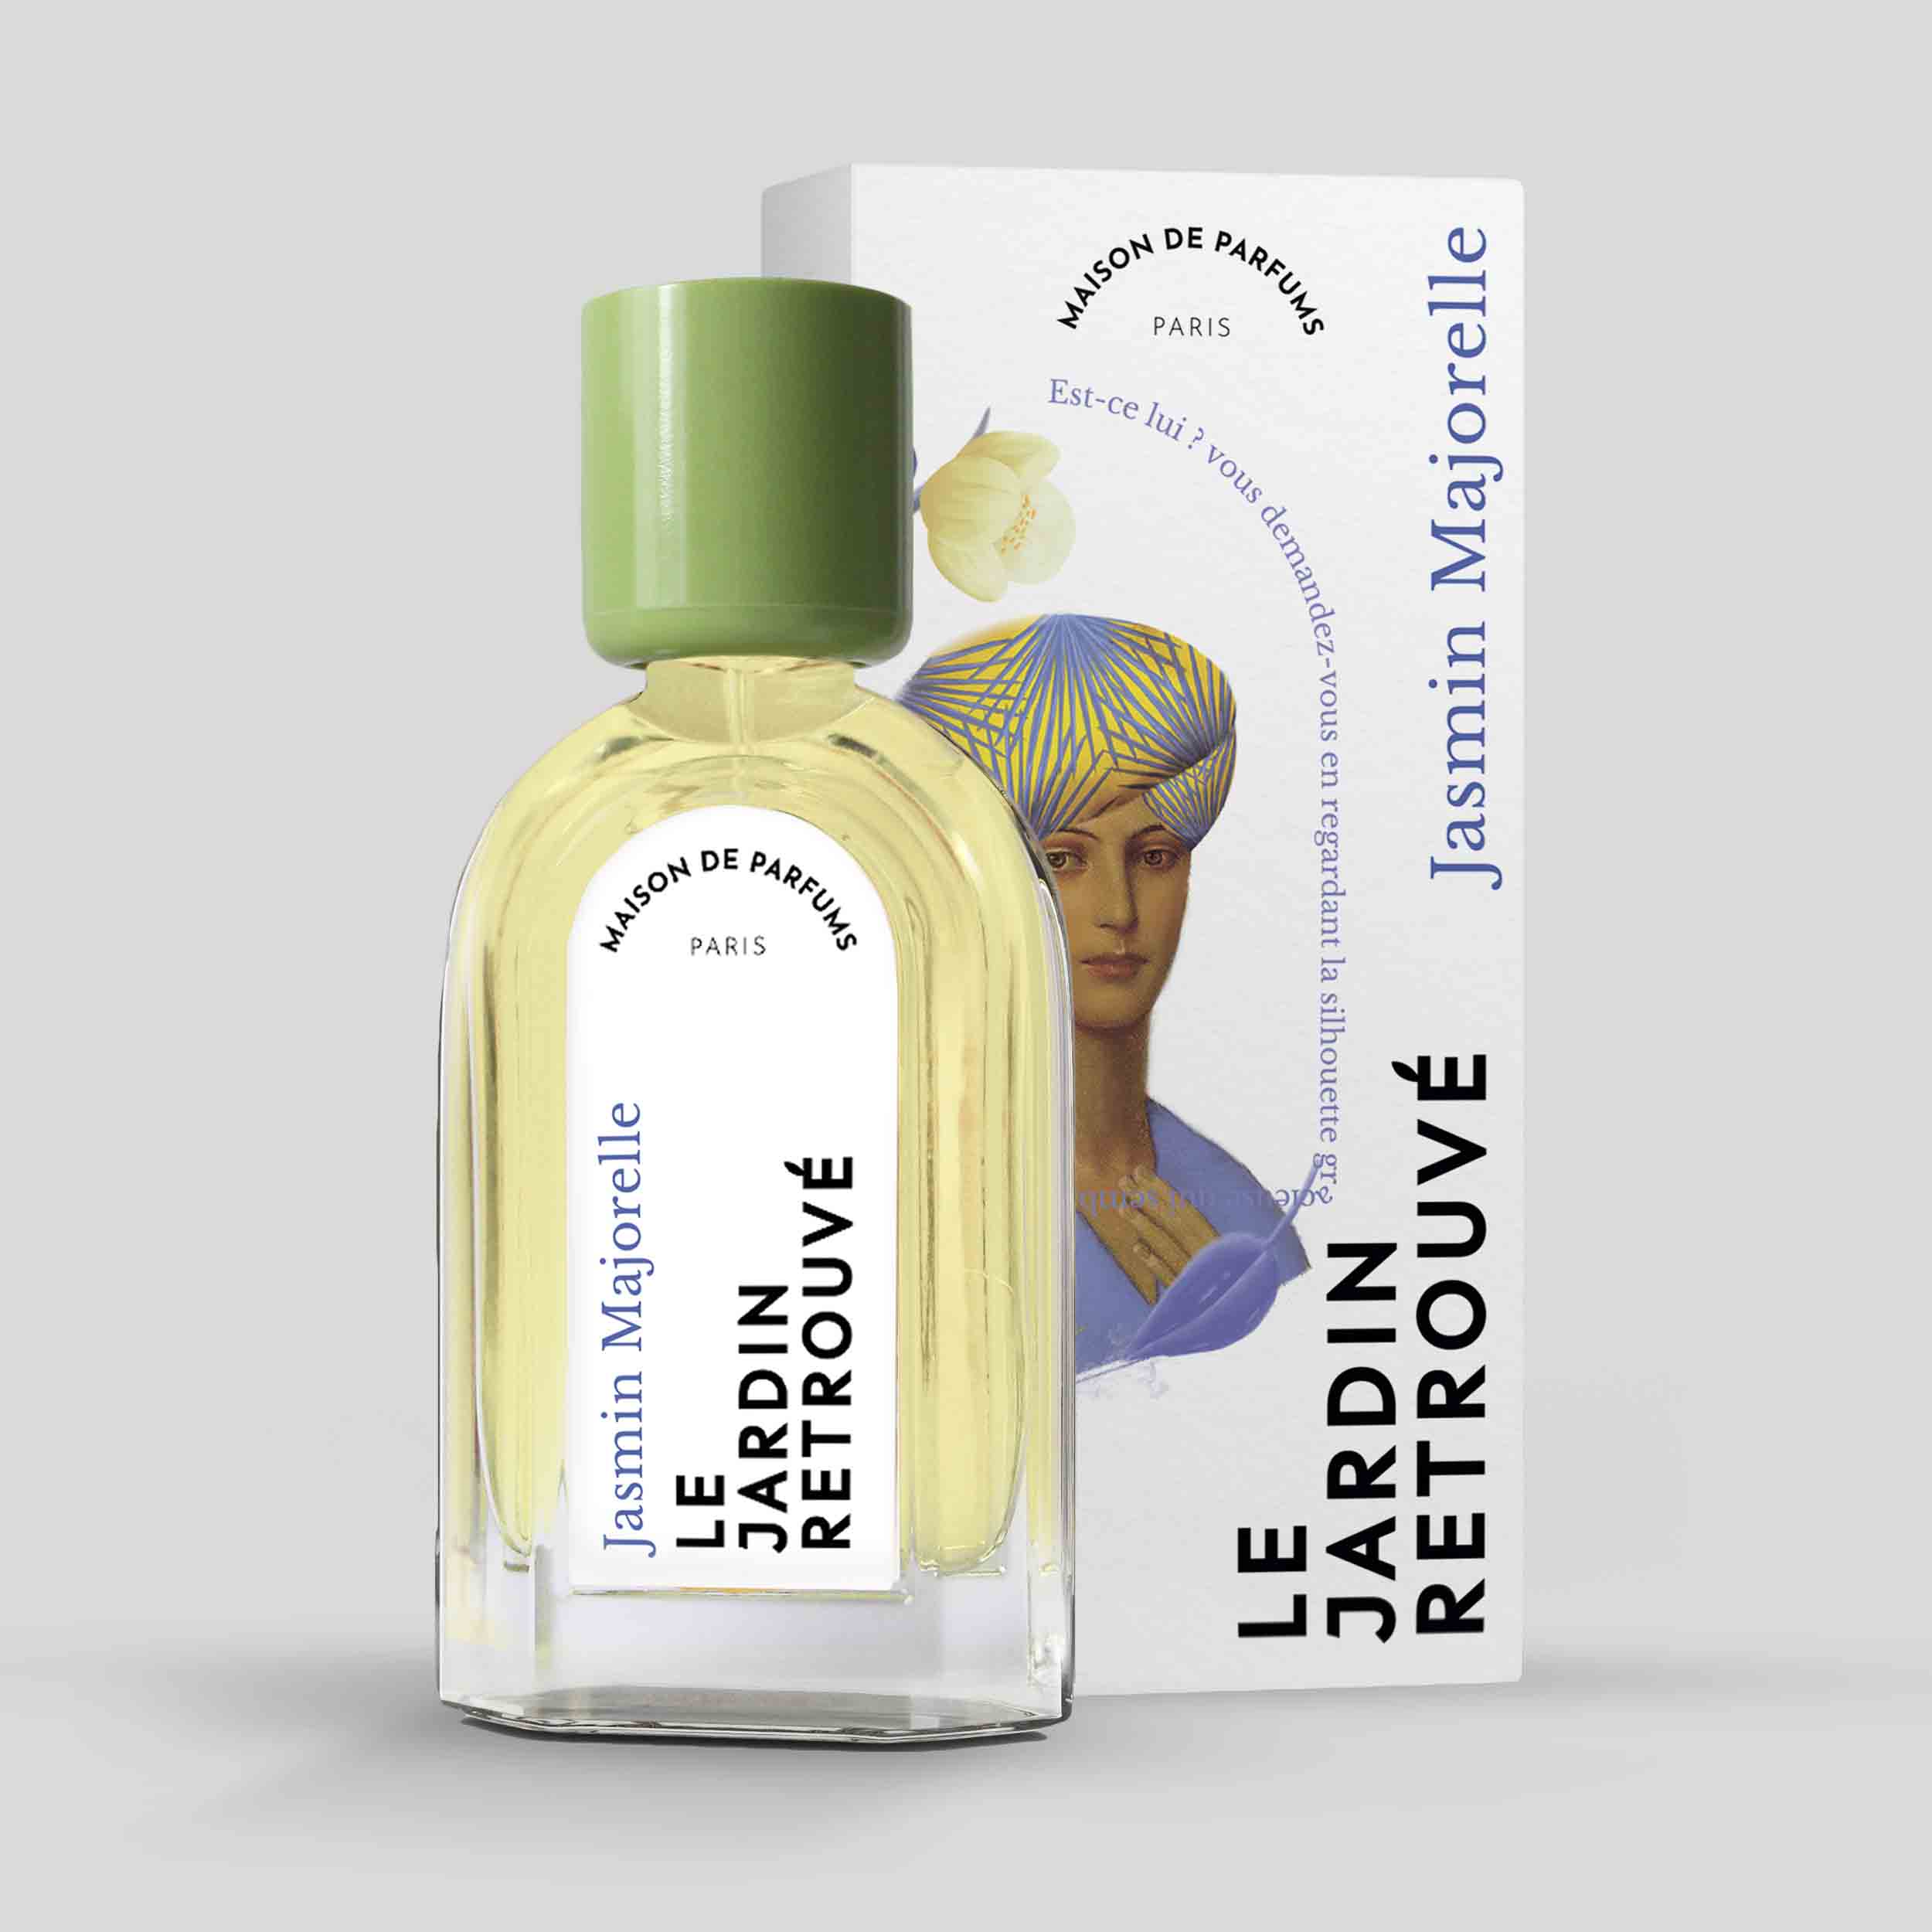 Jasmin Majorelle Eau de Parfum 50ml Bottle and Box by Le Jardin Retrouvé